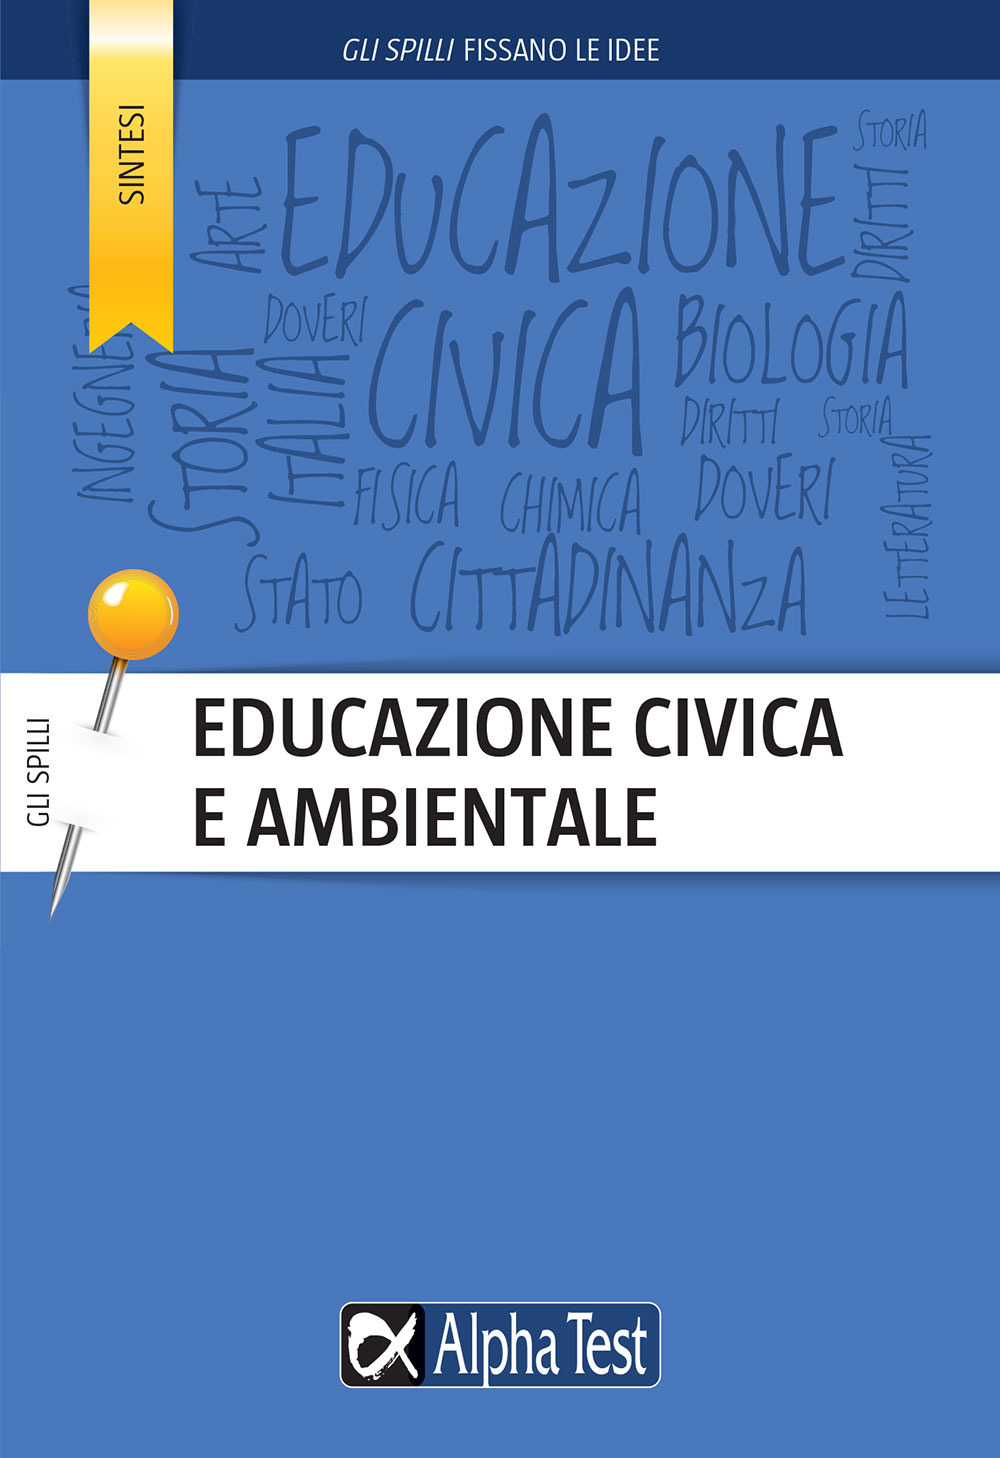 Image of Educazione civica e ambientale